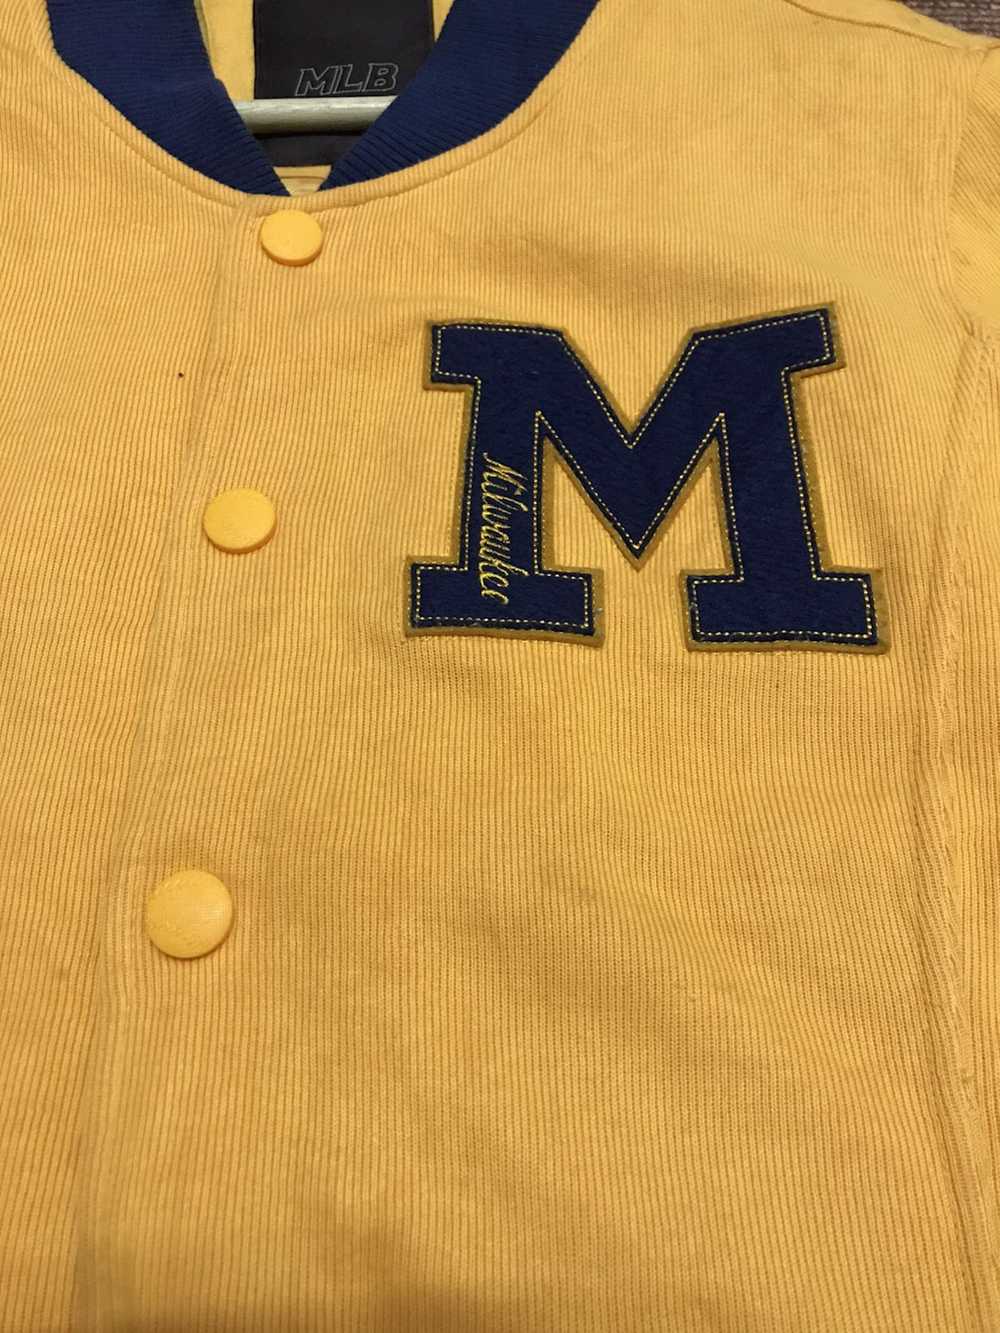 MLB × Varsity Jacket × Vintage VINTAGE ORANGE MIL… - image 3